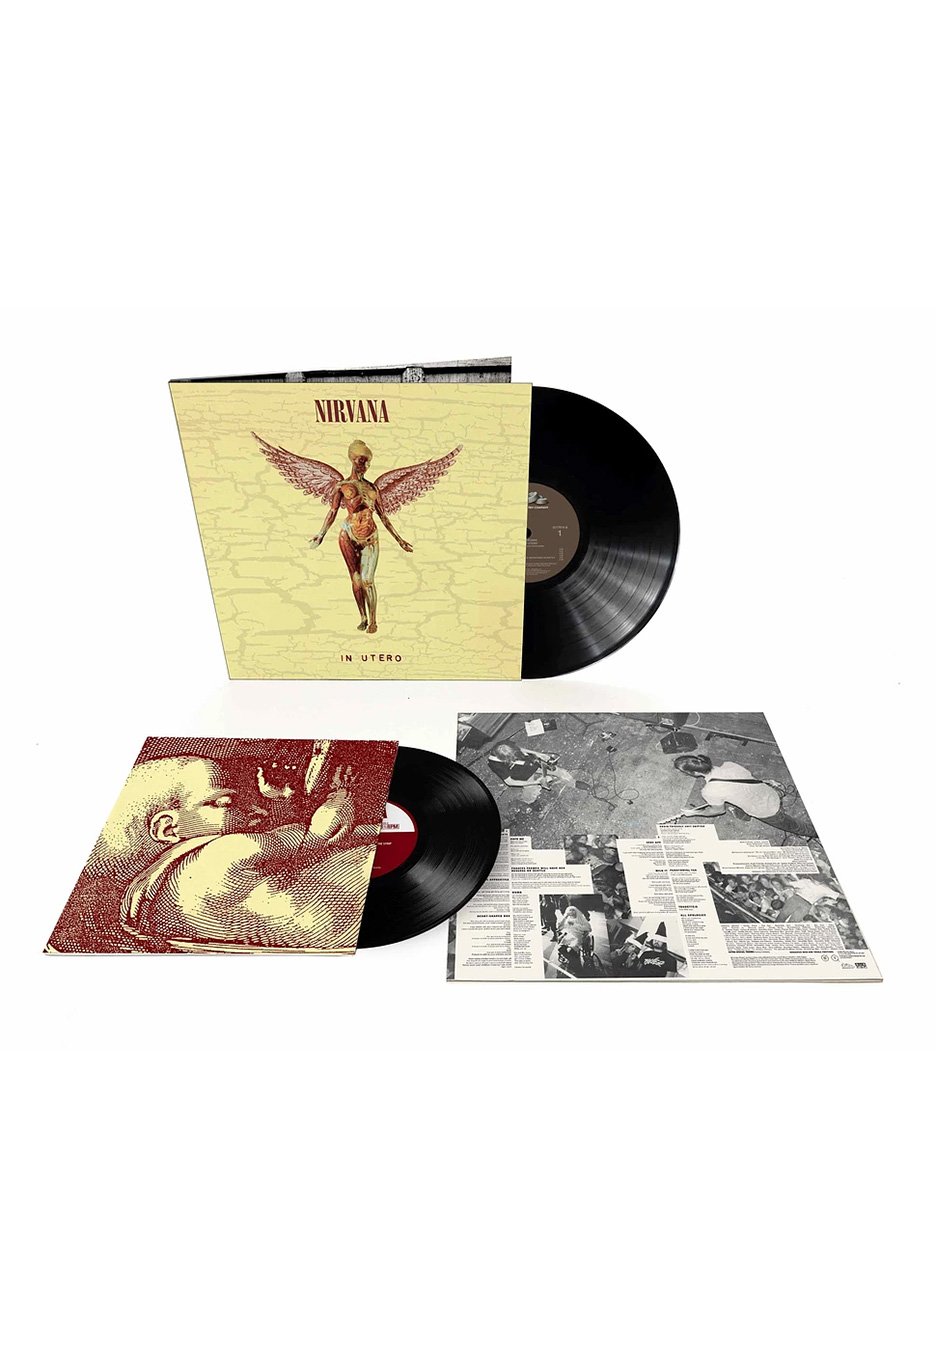 Nirvana - In Utero (Ltd. Original Album + Bonus Tracks) - Vinyl + 10"